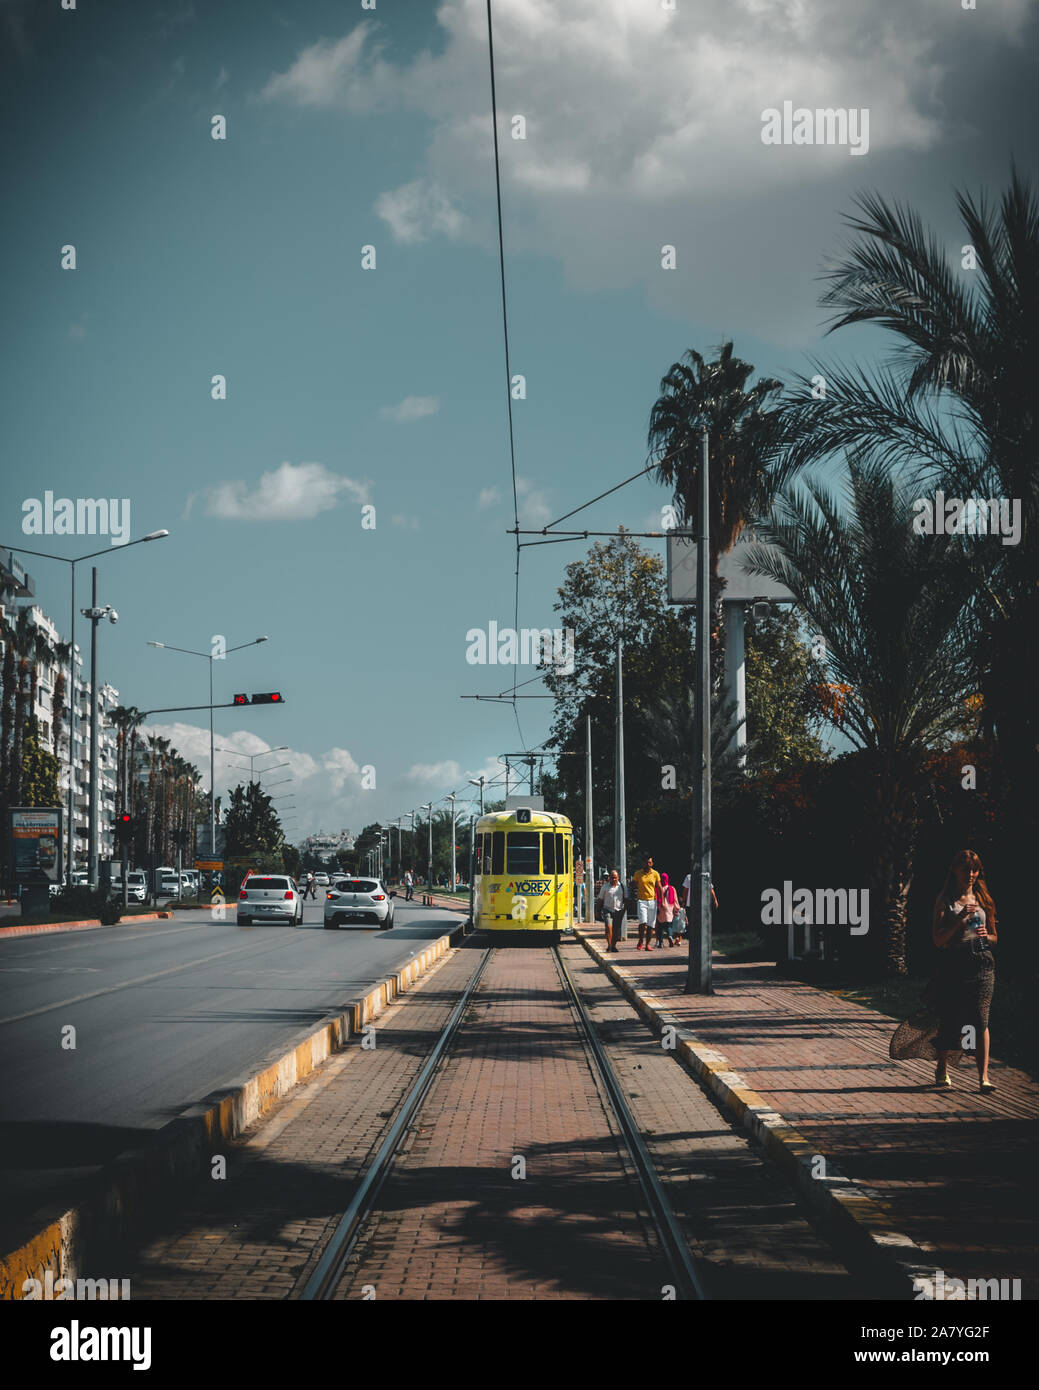 Antalya, Türkei - 6. Oktober 2019: Ansatz der gelben Straßenbahn in der Stadt. nostalgische Straßenbahn in Antalya gibt Touristen und Einheimische kleine Fahrt durch die Stadt. Stockfoto